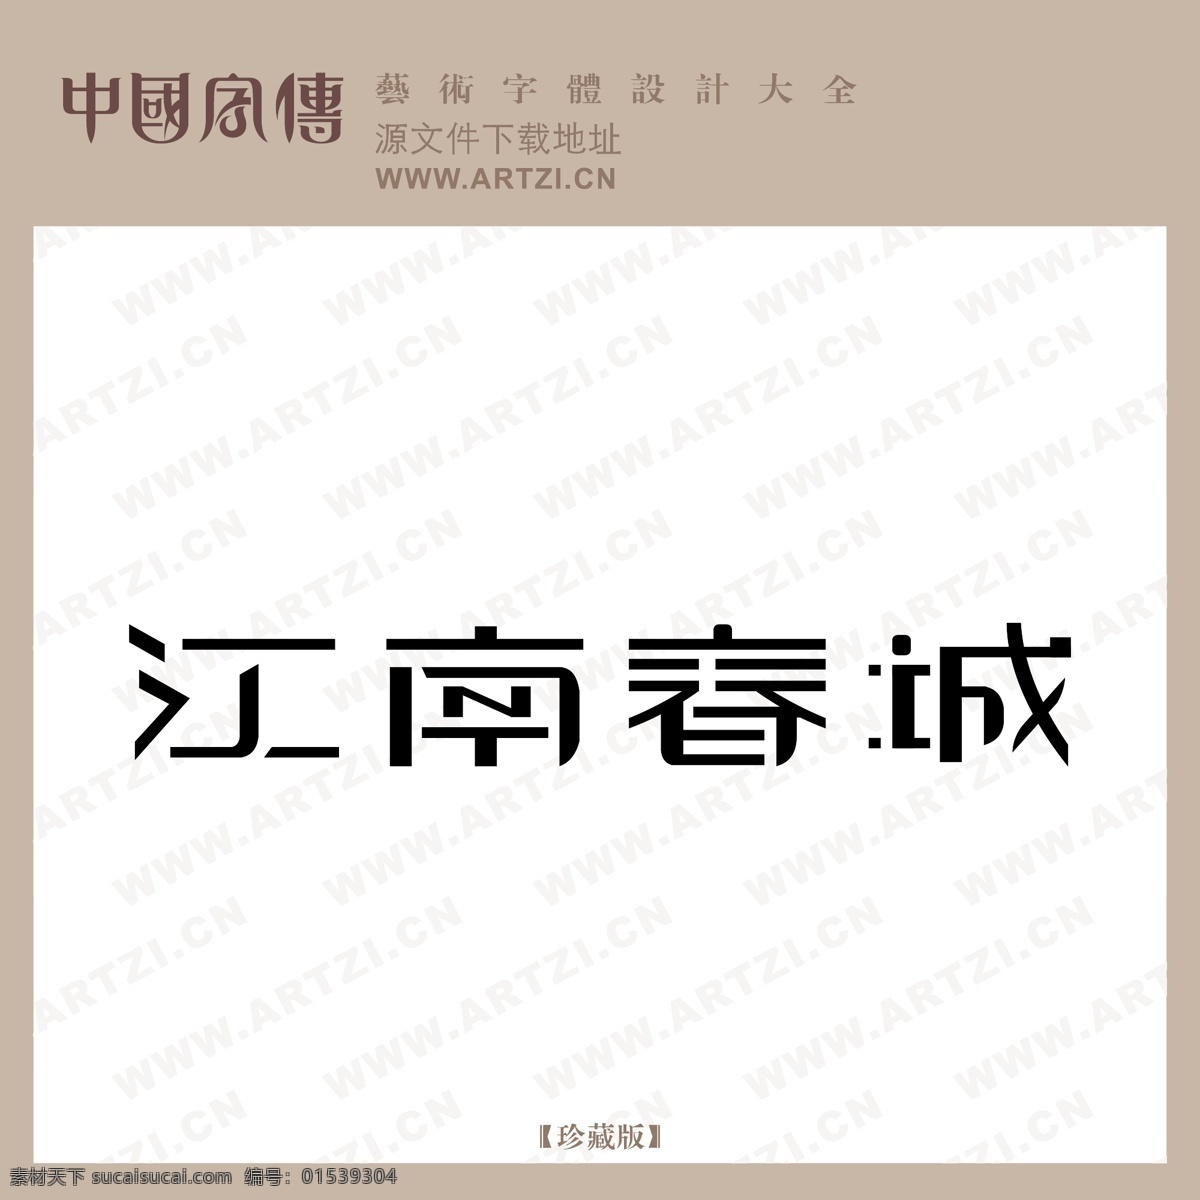 江南春城 矢量下载 网页矢量 商业矢量 logo大全 白色